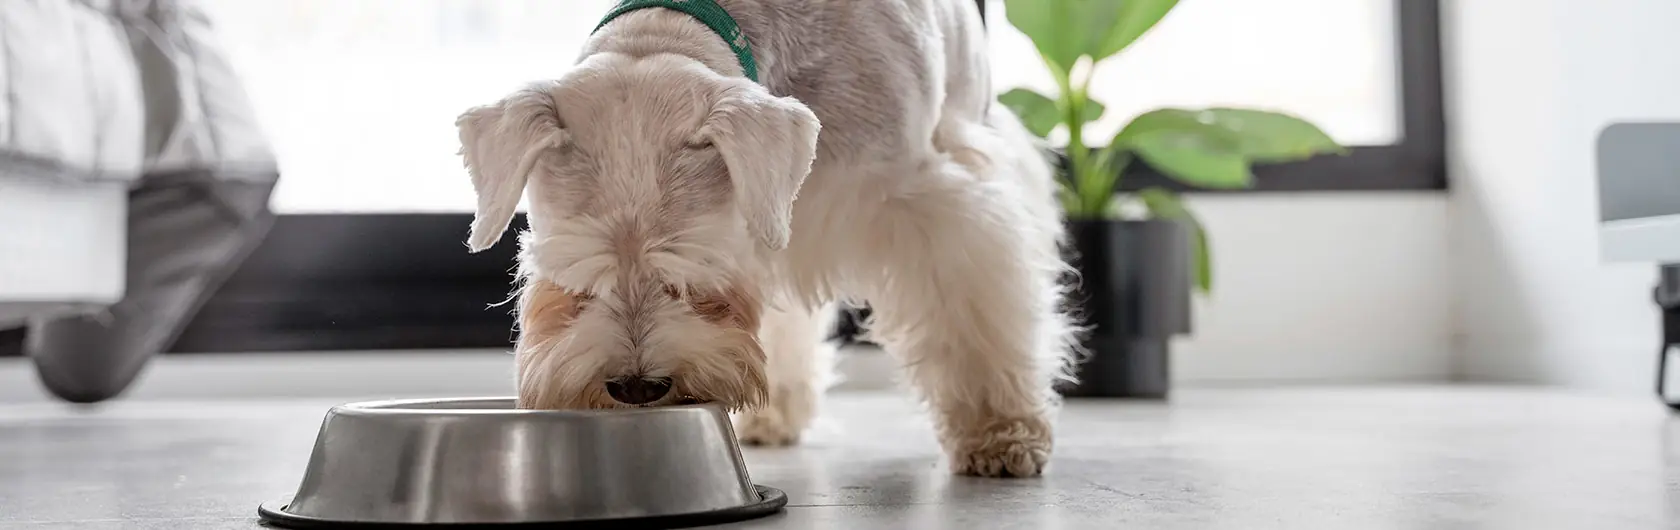 Alimentos-peligrosos-para-perros-y-alimentos-para-perros-de-calidad-nutribon